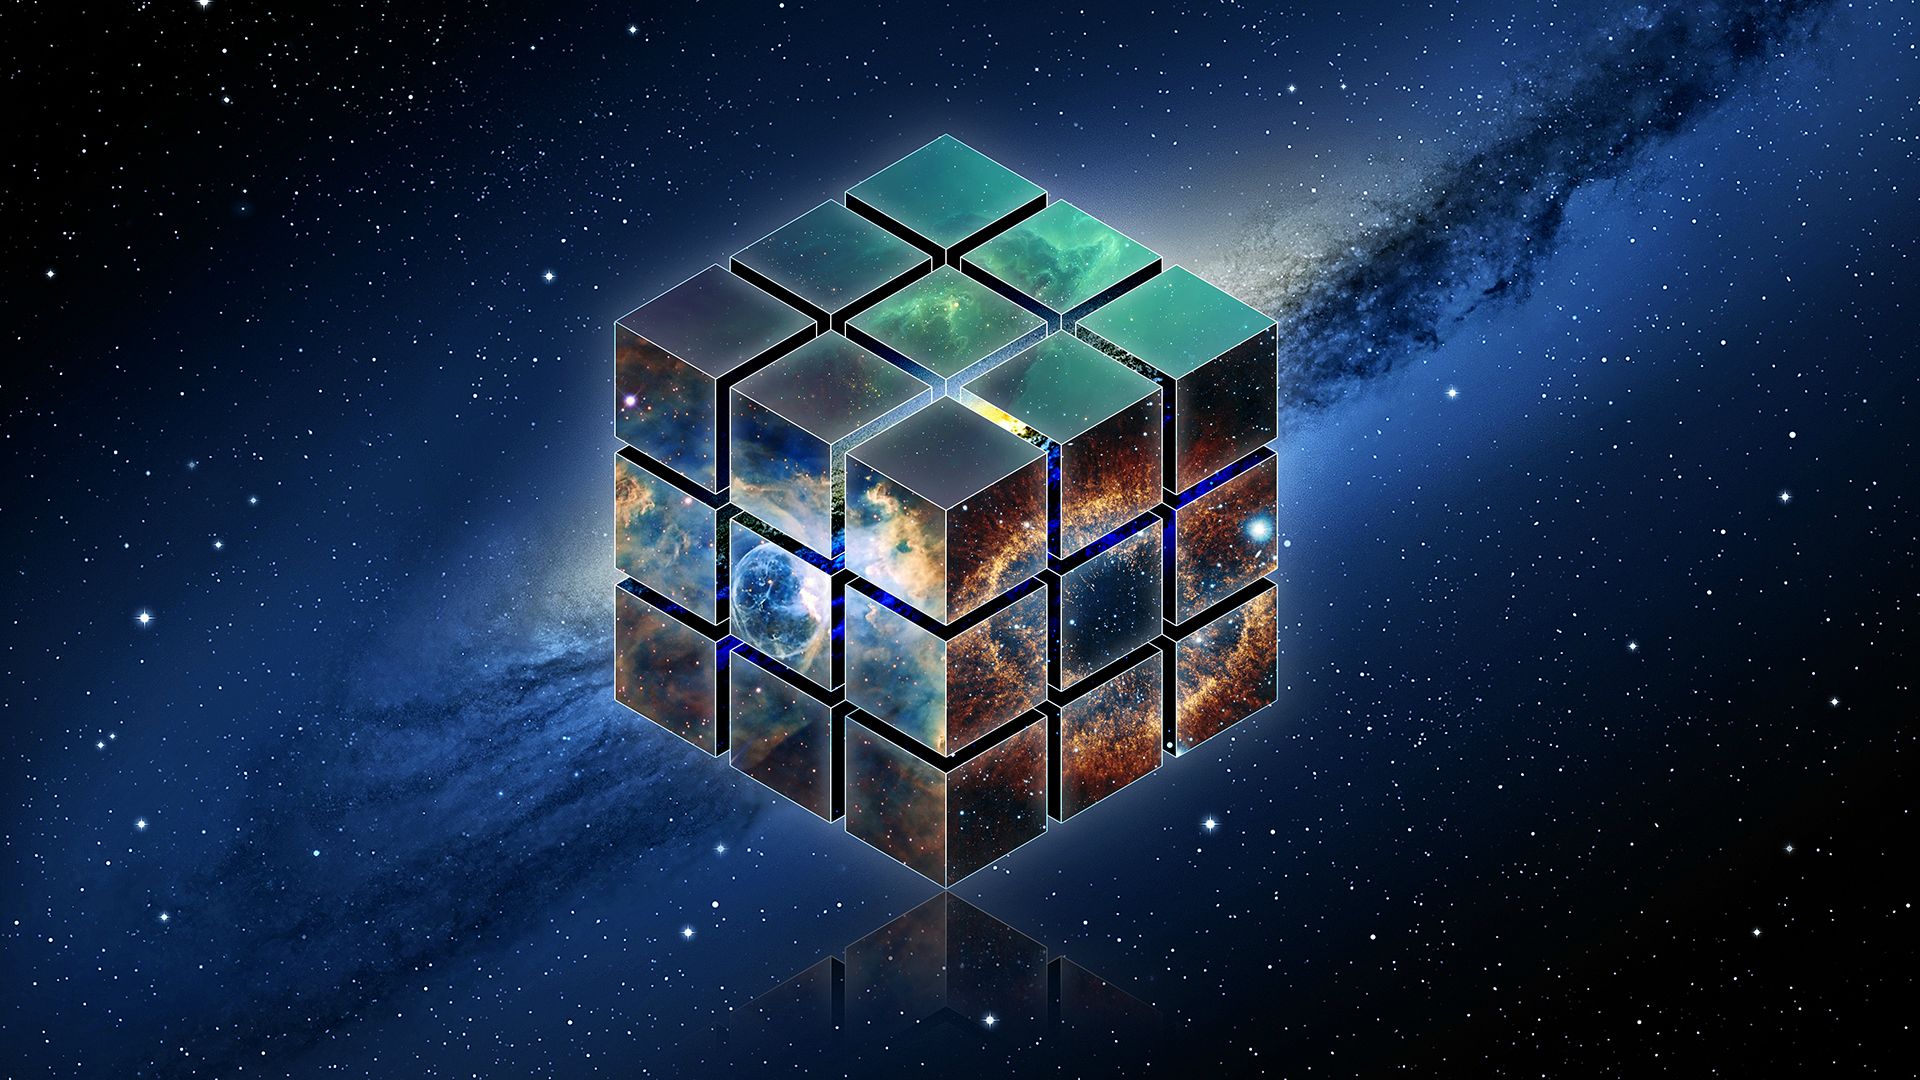 La teoría del Universo de bloque: ¡pasado, presente y futuro existen simultáneamente!